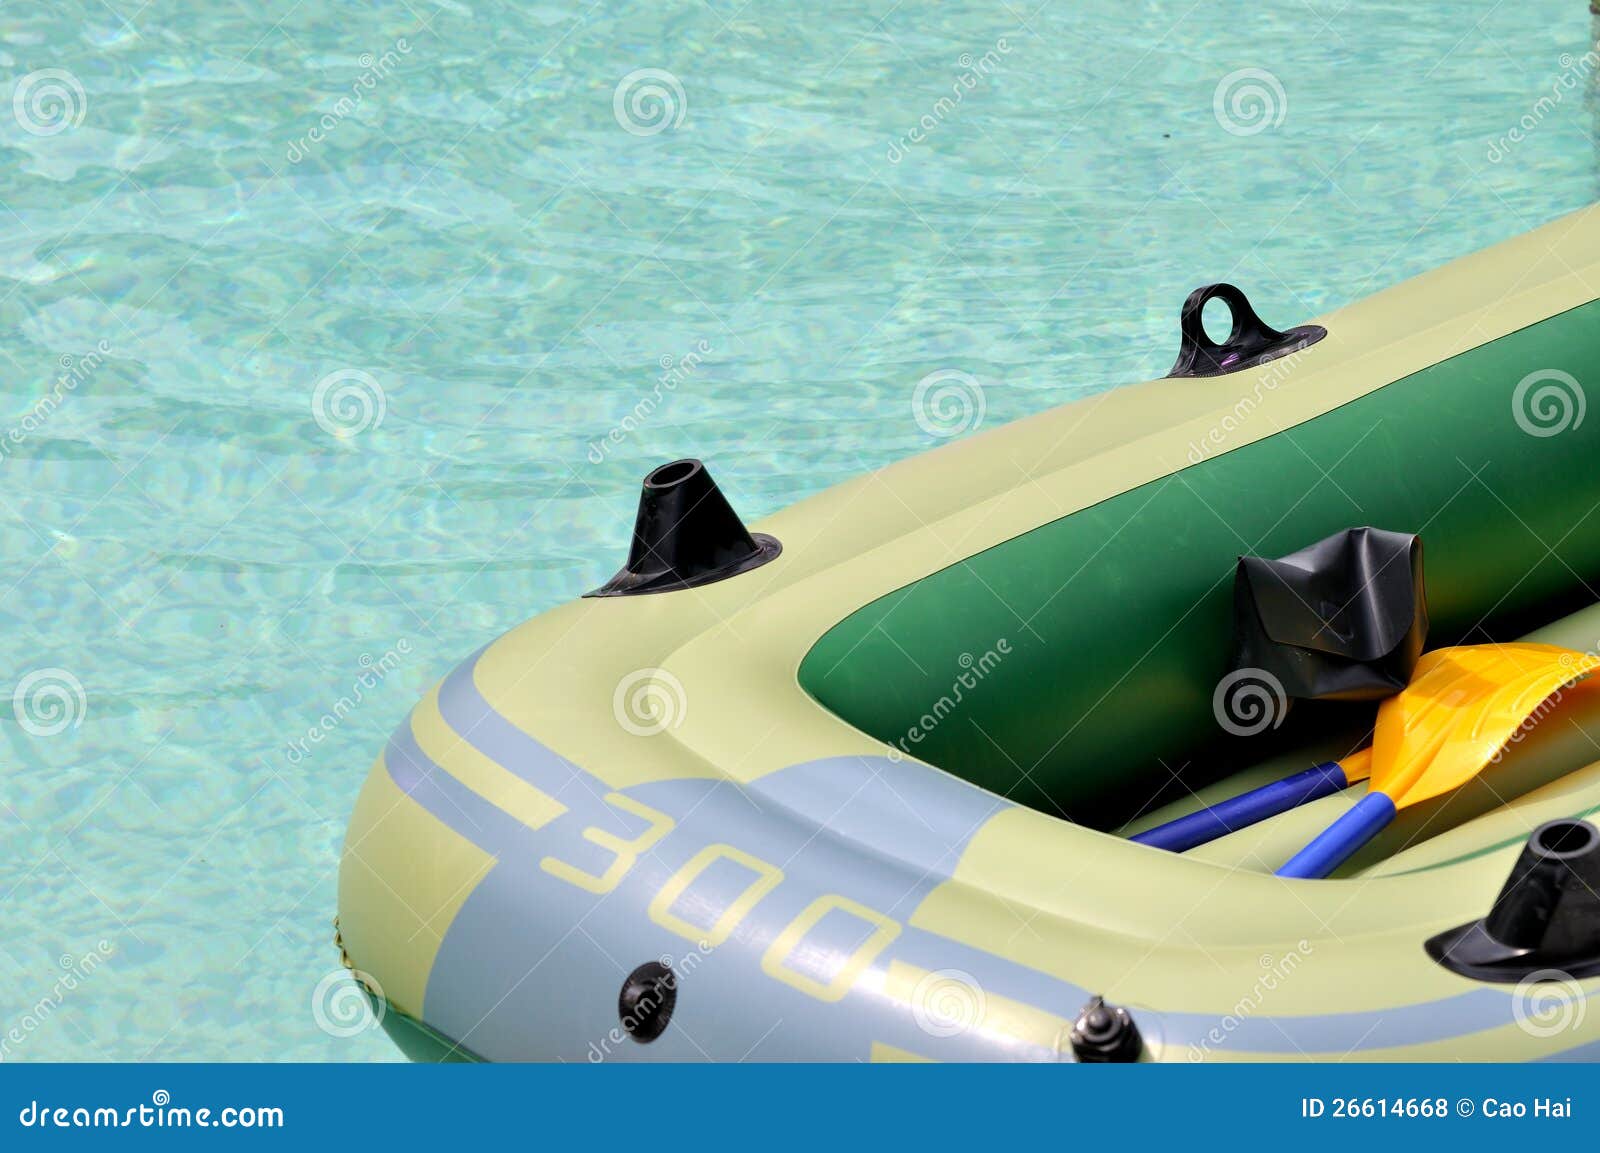 Резиновая шлюпка на воде. Светлая резиновая шлюпка плавая на воду, показанную как спорт и зрелищность воды лета.